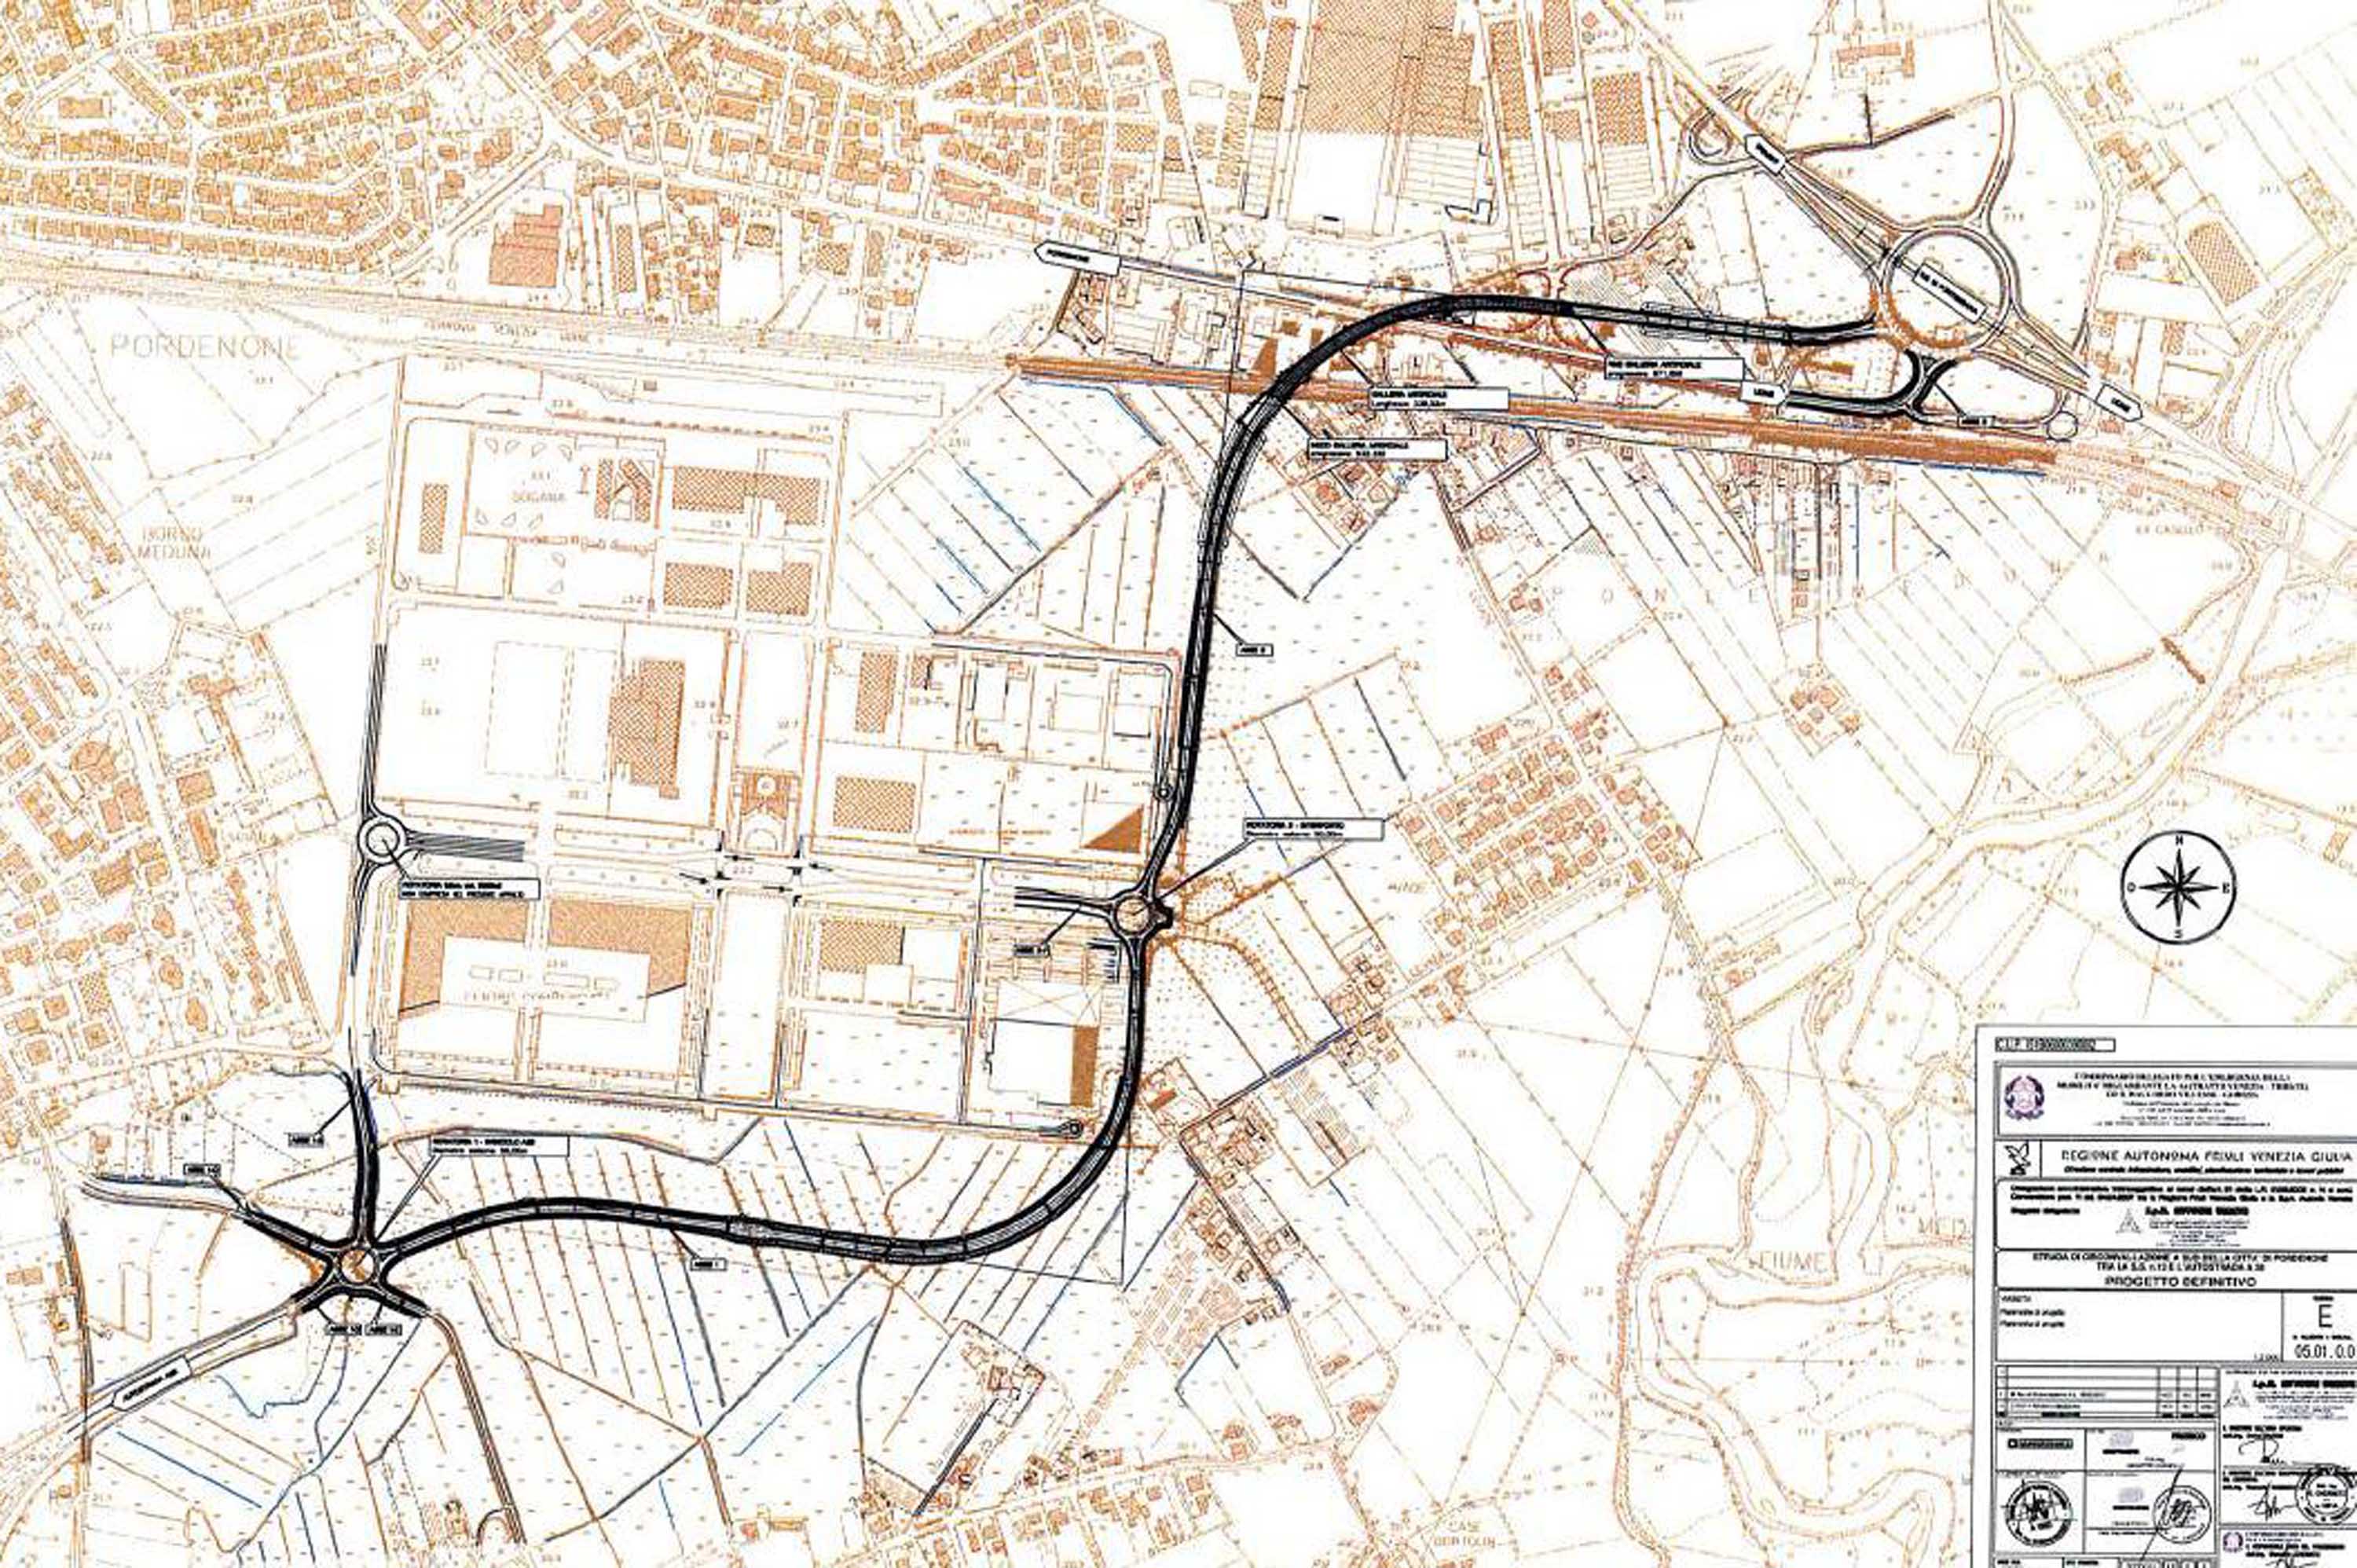 Progetto definitivo della strada di circonvallazione a Sud della Città di Pordenone tra la strada statale 13 &quot;Pontebbana&quot; e l'autostrada A28